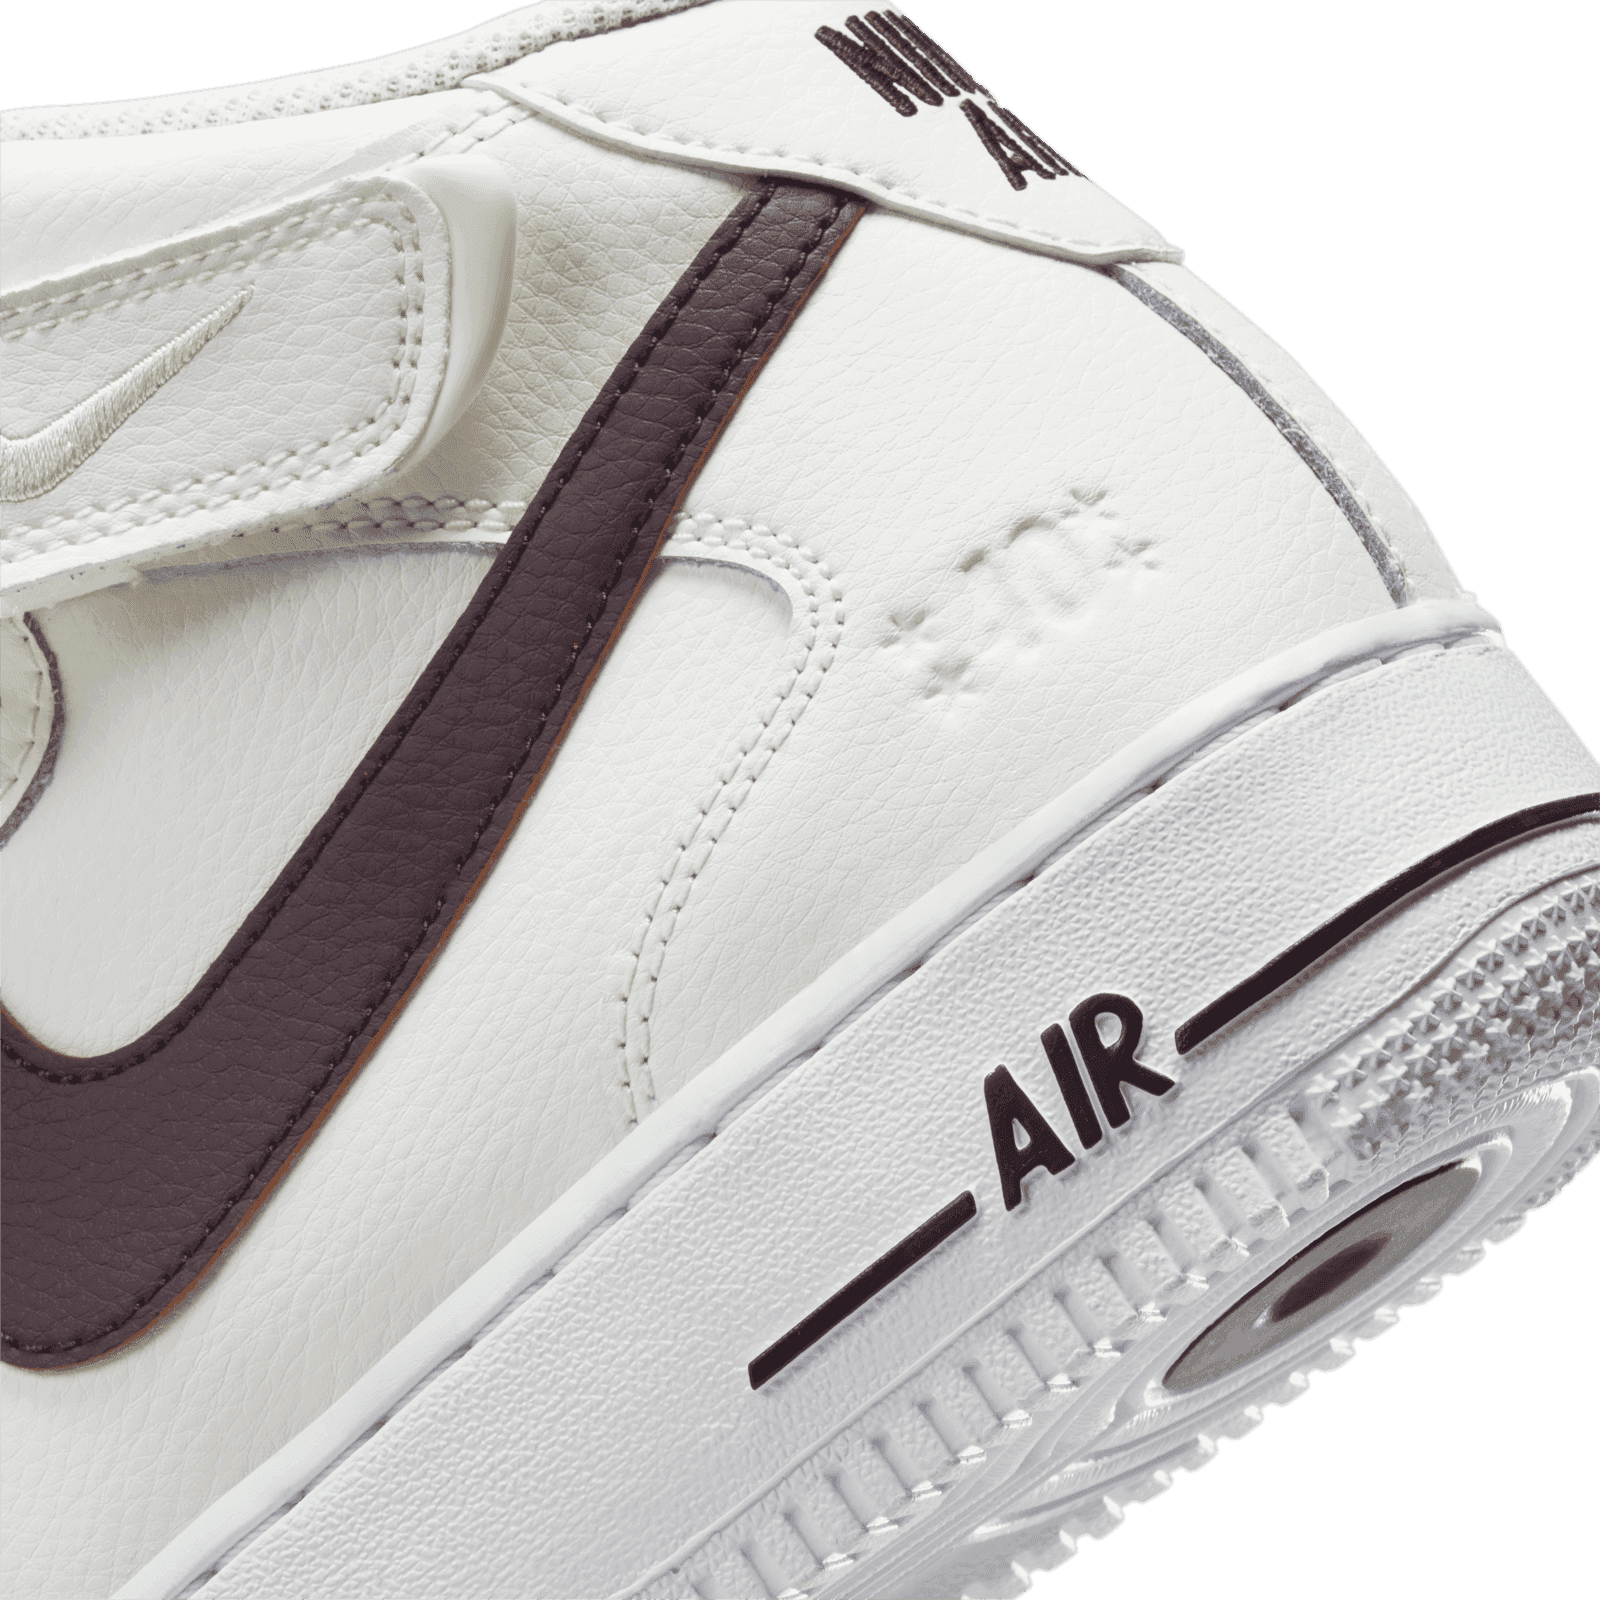 Nike Air Force 1 Mid 40th Anniversary Sail Brown Basalt - DR9513